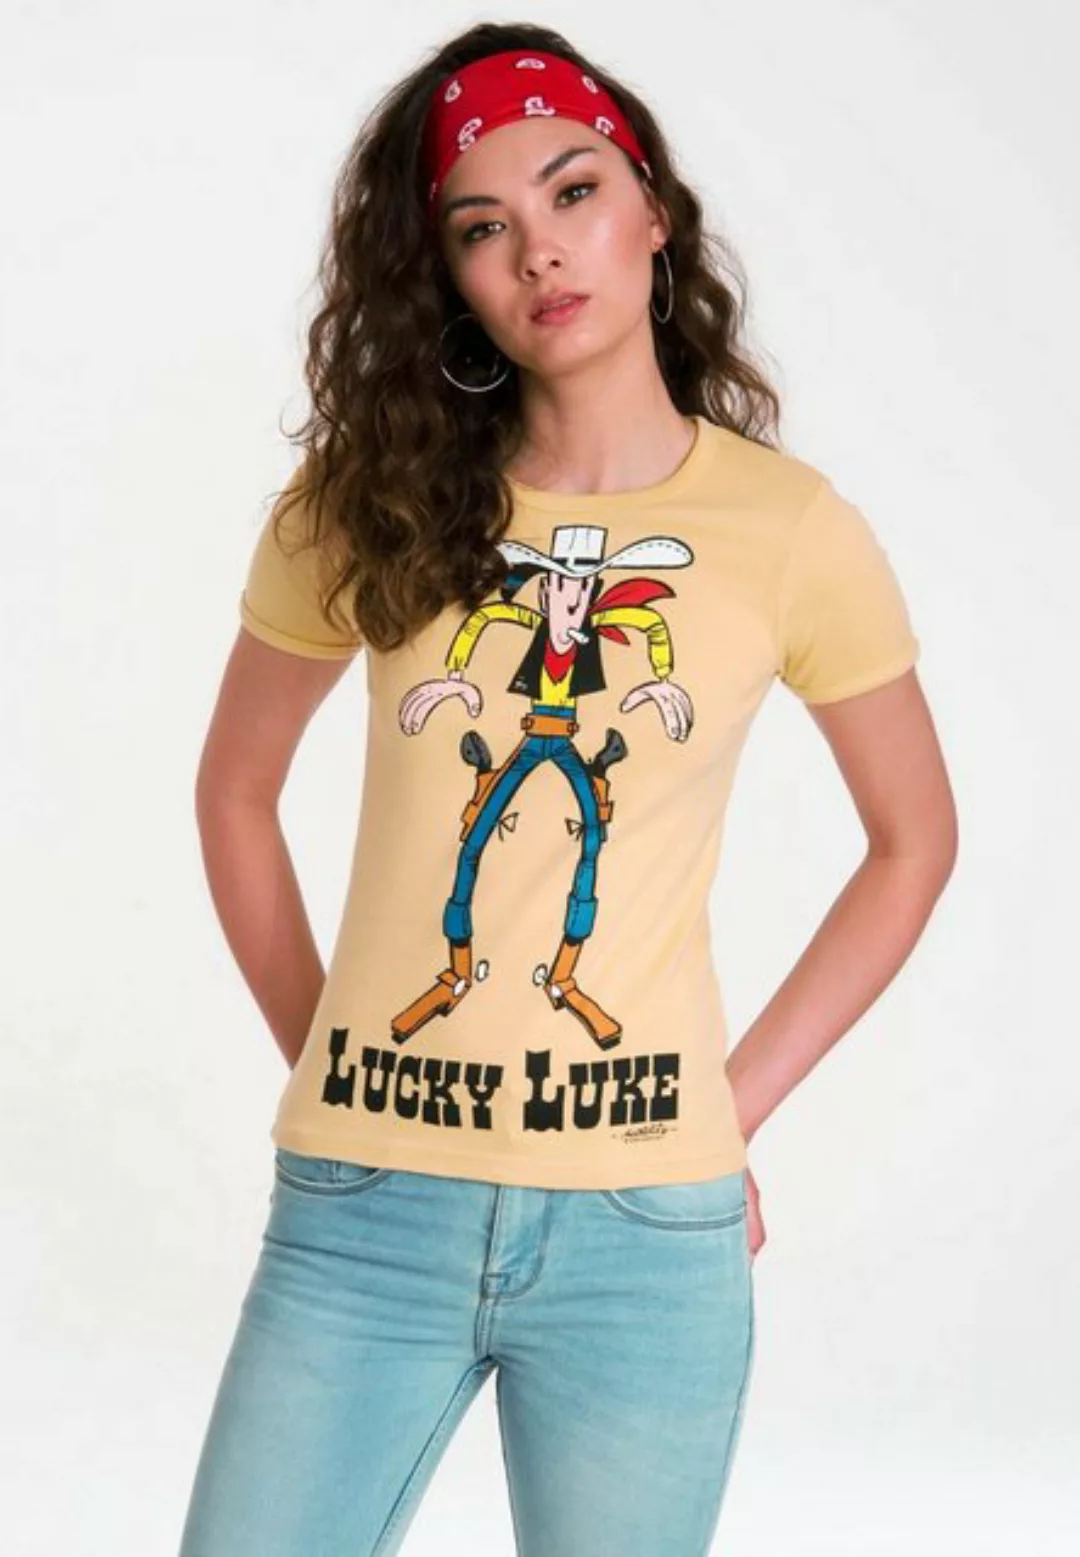 LOGOSHIRT T-Shirt "Lucky Luke Showdown", mit lizenziertem Originaldesign günstig online kaufen